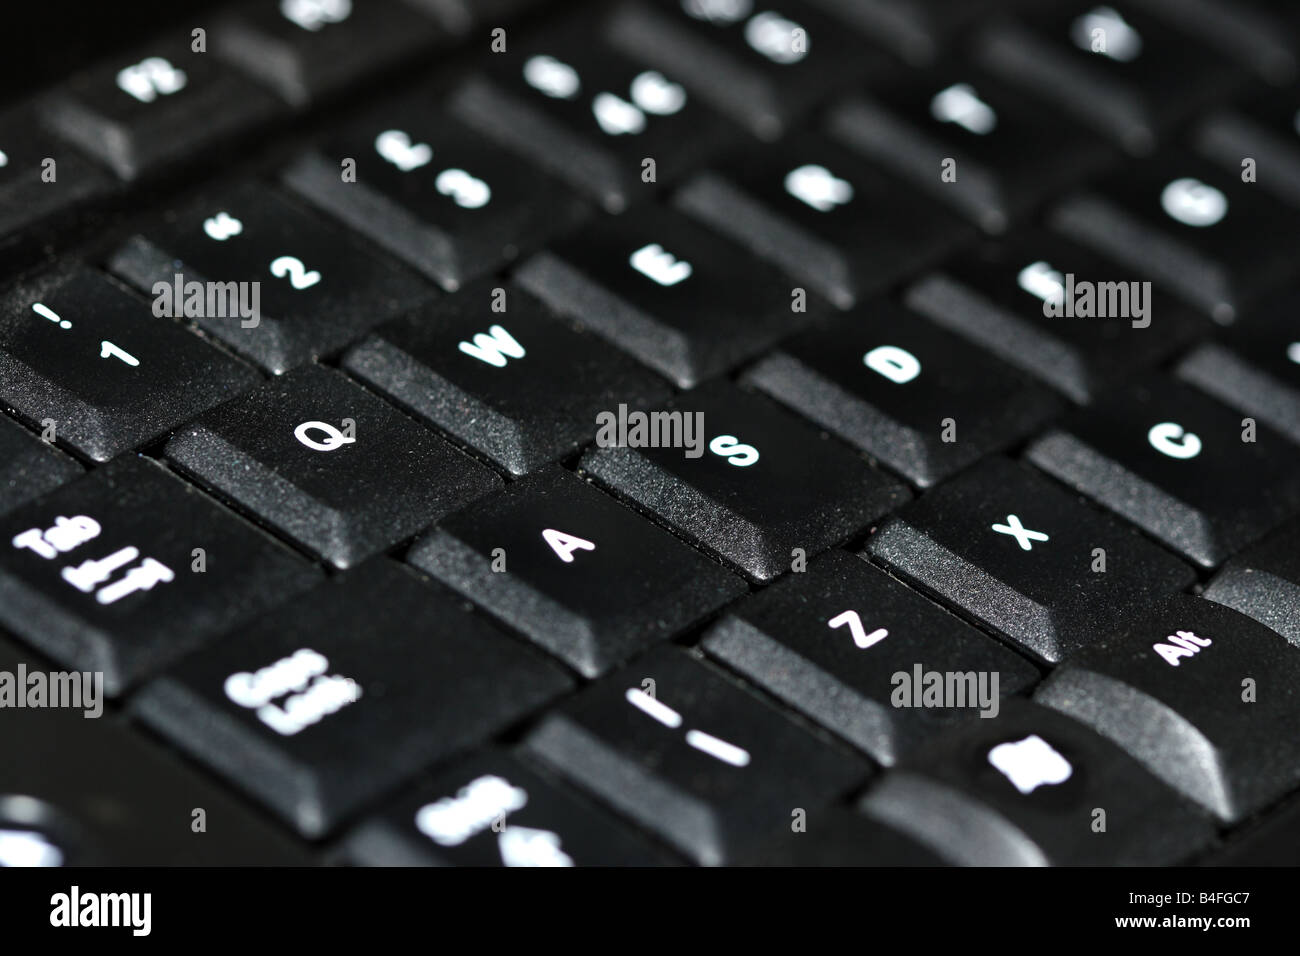 Laptop keyboard Stock Photo